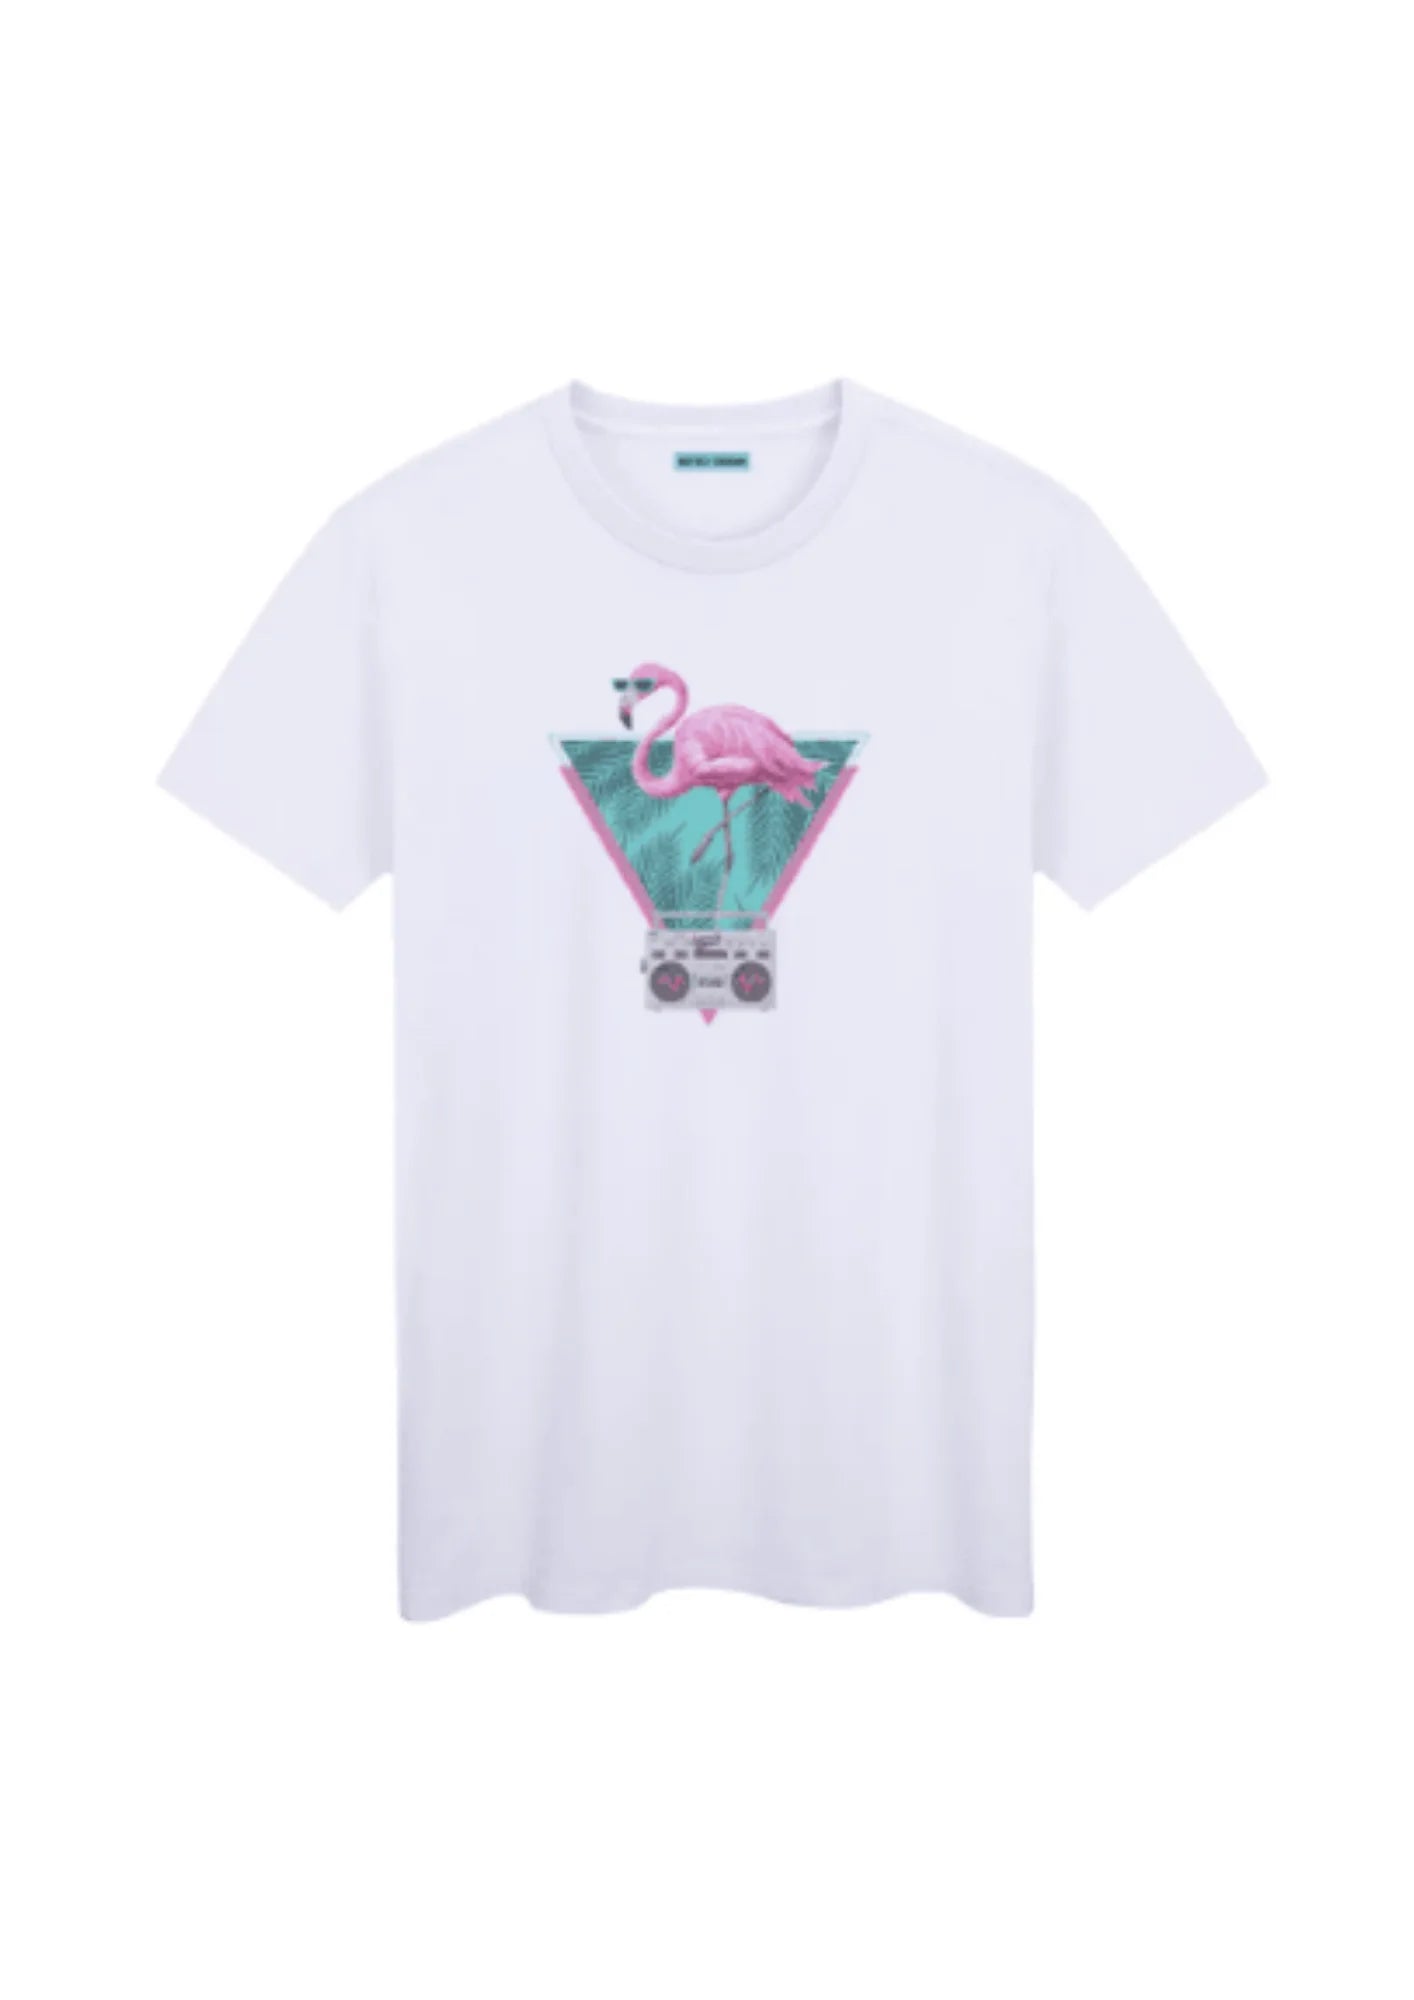 T-shirt flamant rose rétro